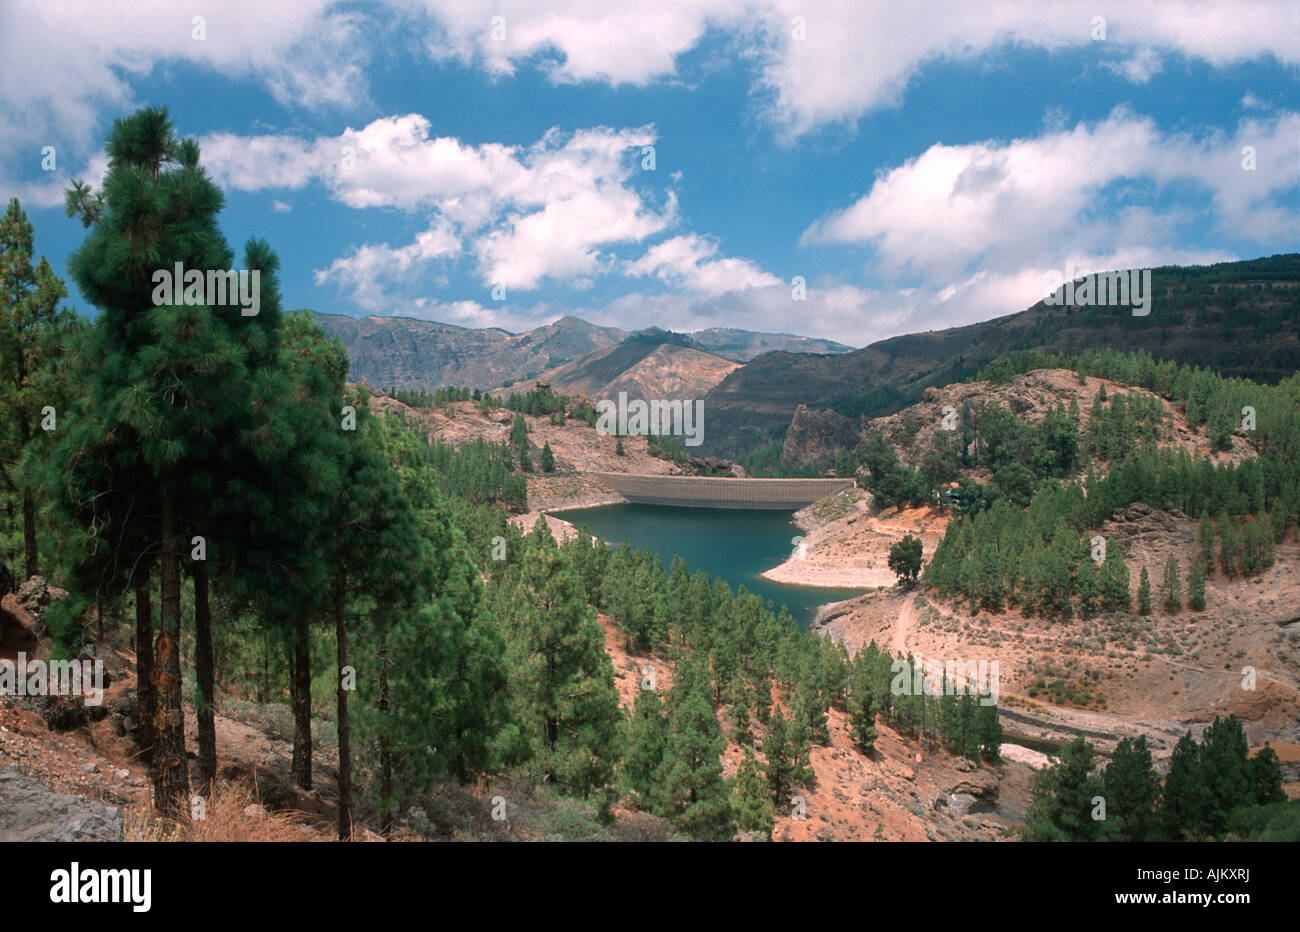 Reservoir Presa de los Hornos Gran Canaria Canary Islands Spain Stock Photo